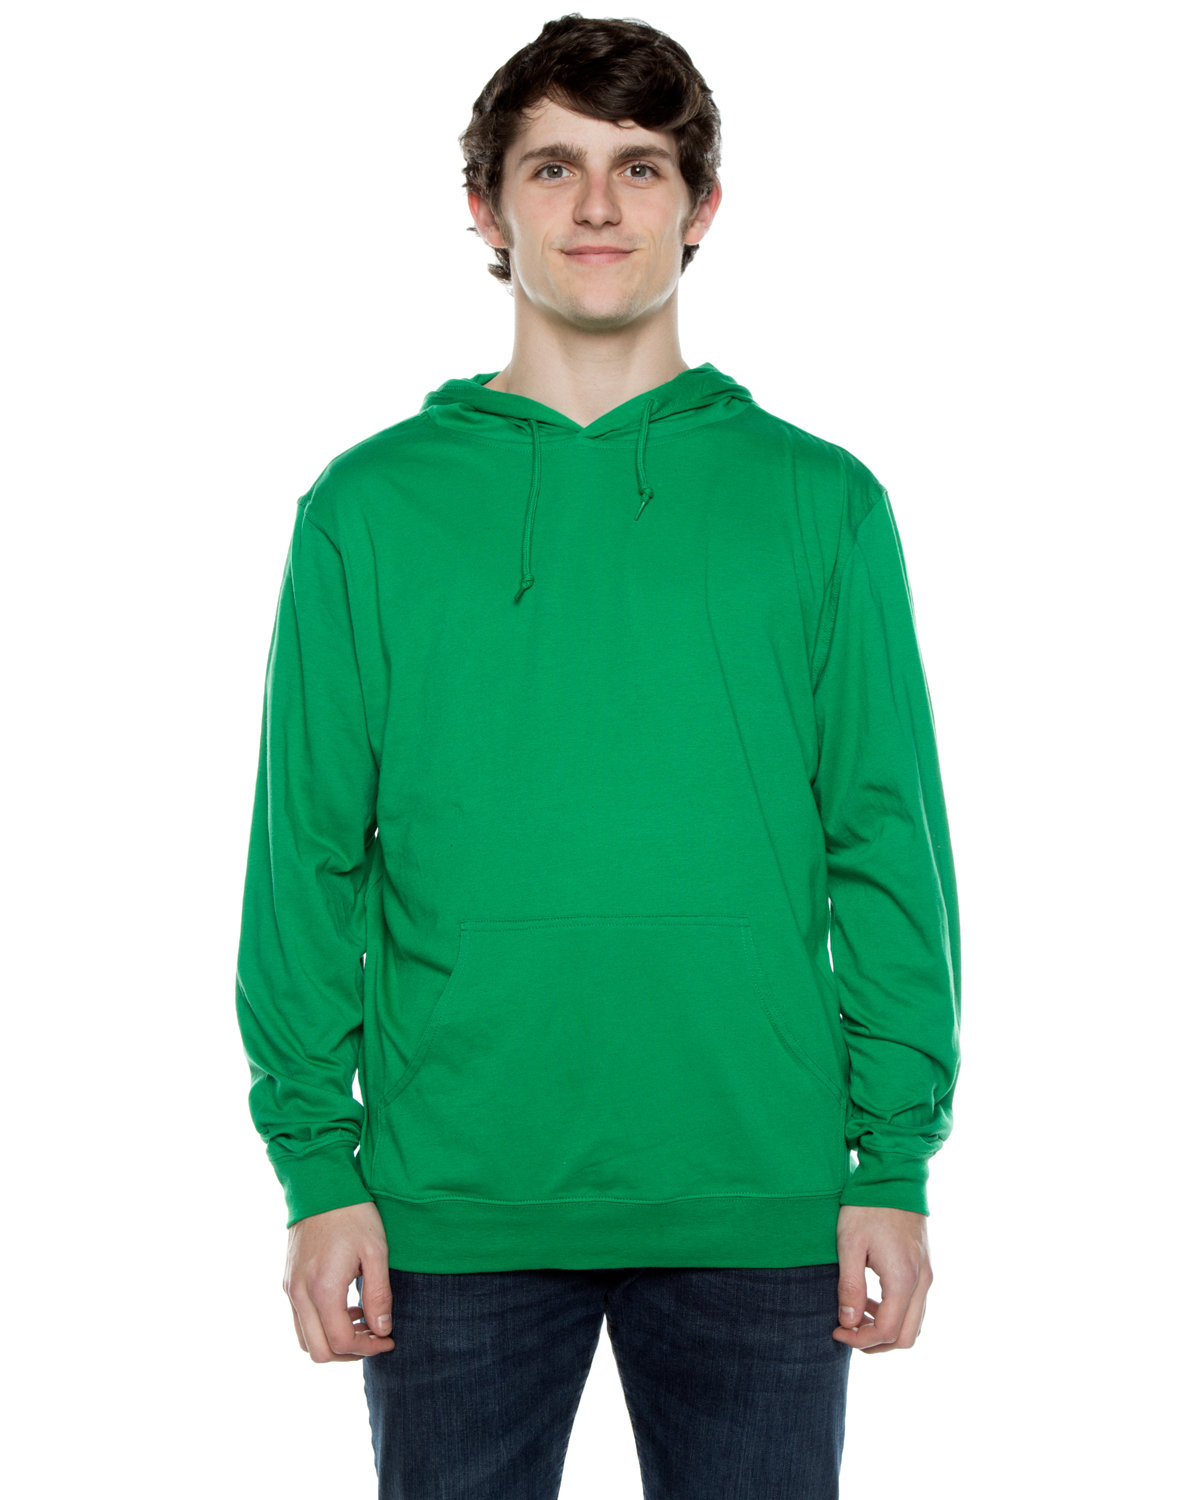 Beimar Drop Ship Unisex 4.5 oz. Long-Sleeve Jersey Hooded T-Shirt KELLY GREEN 